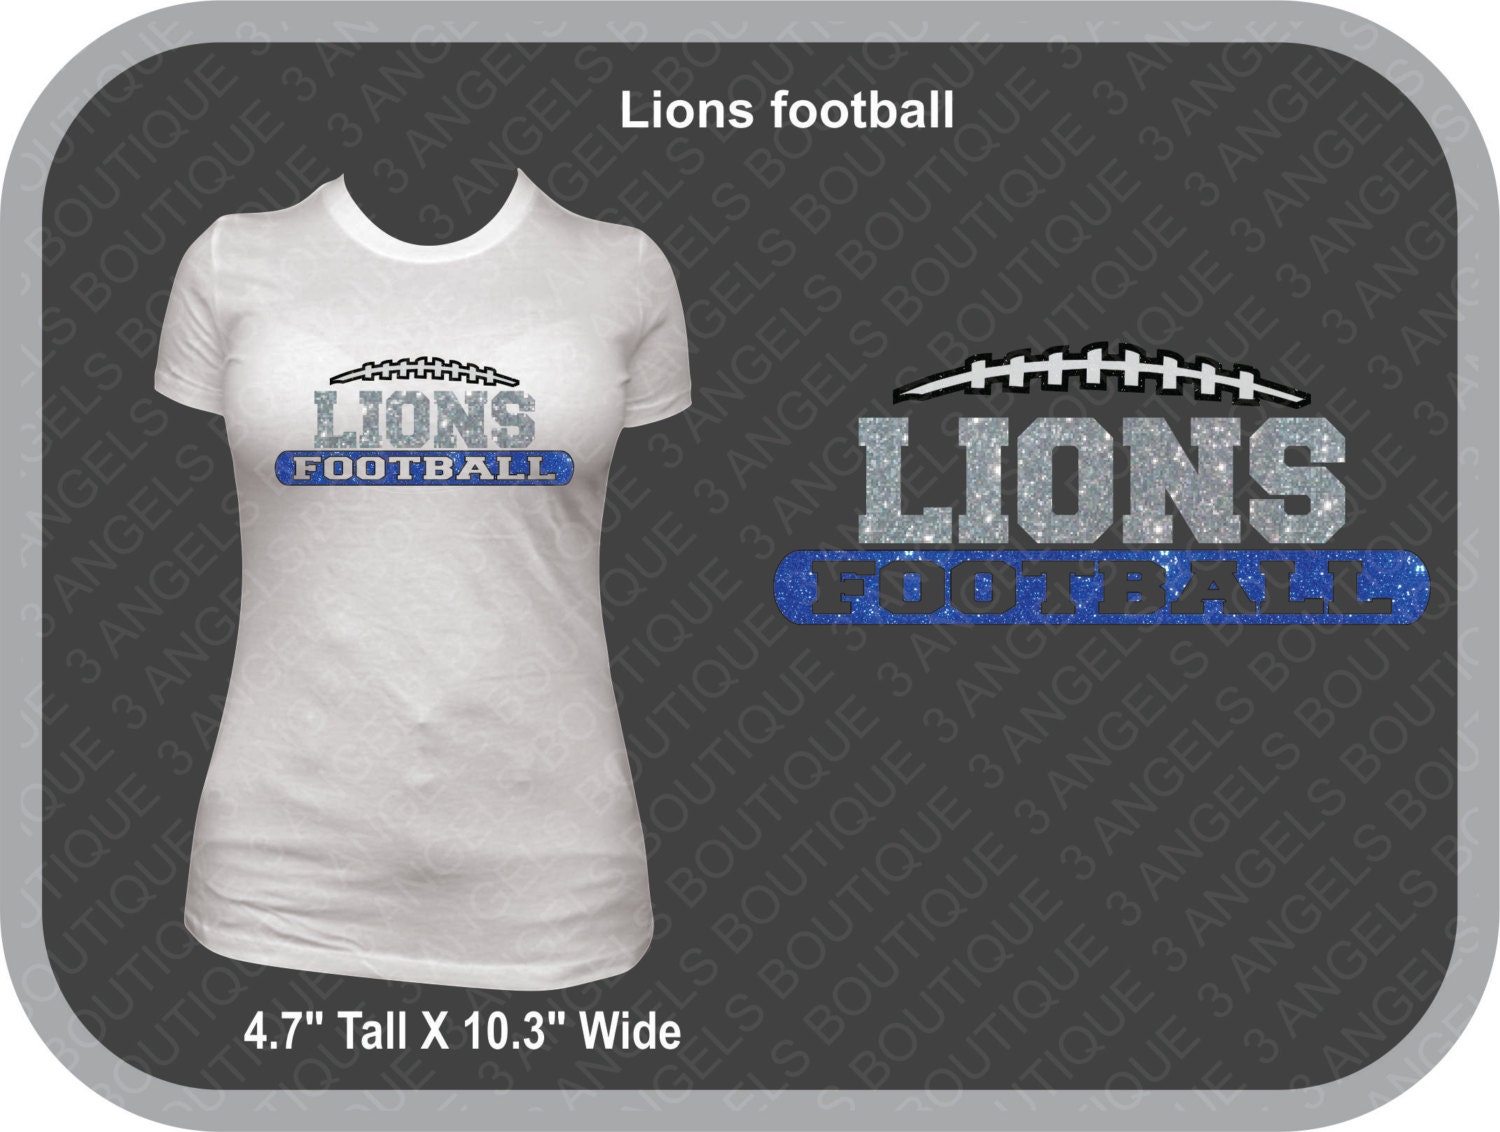 lions football shirt